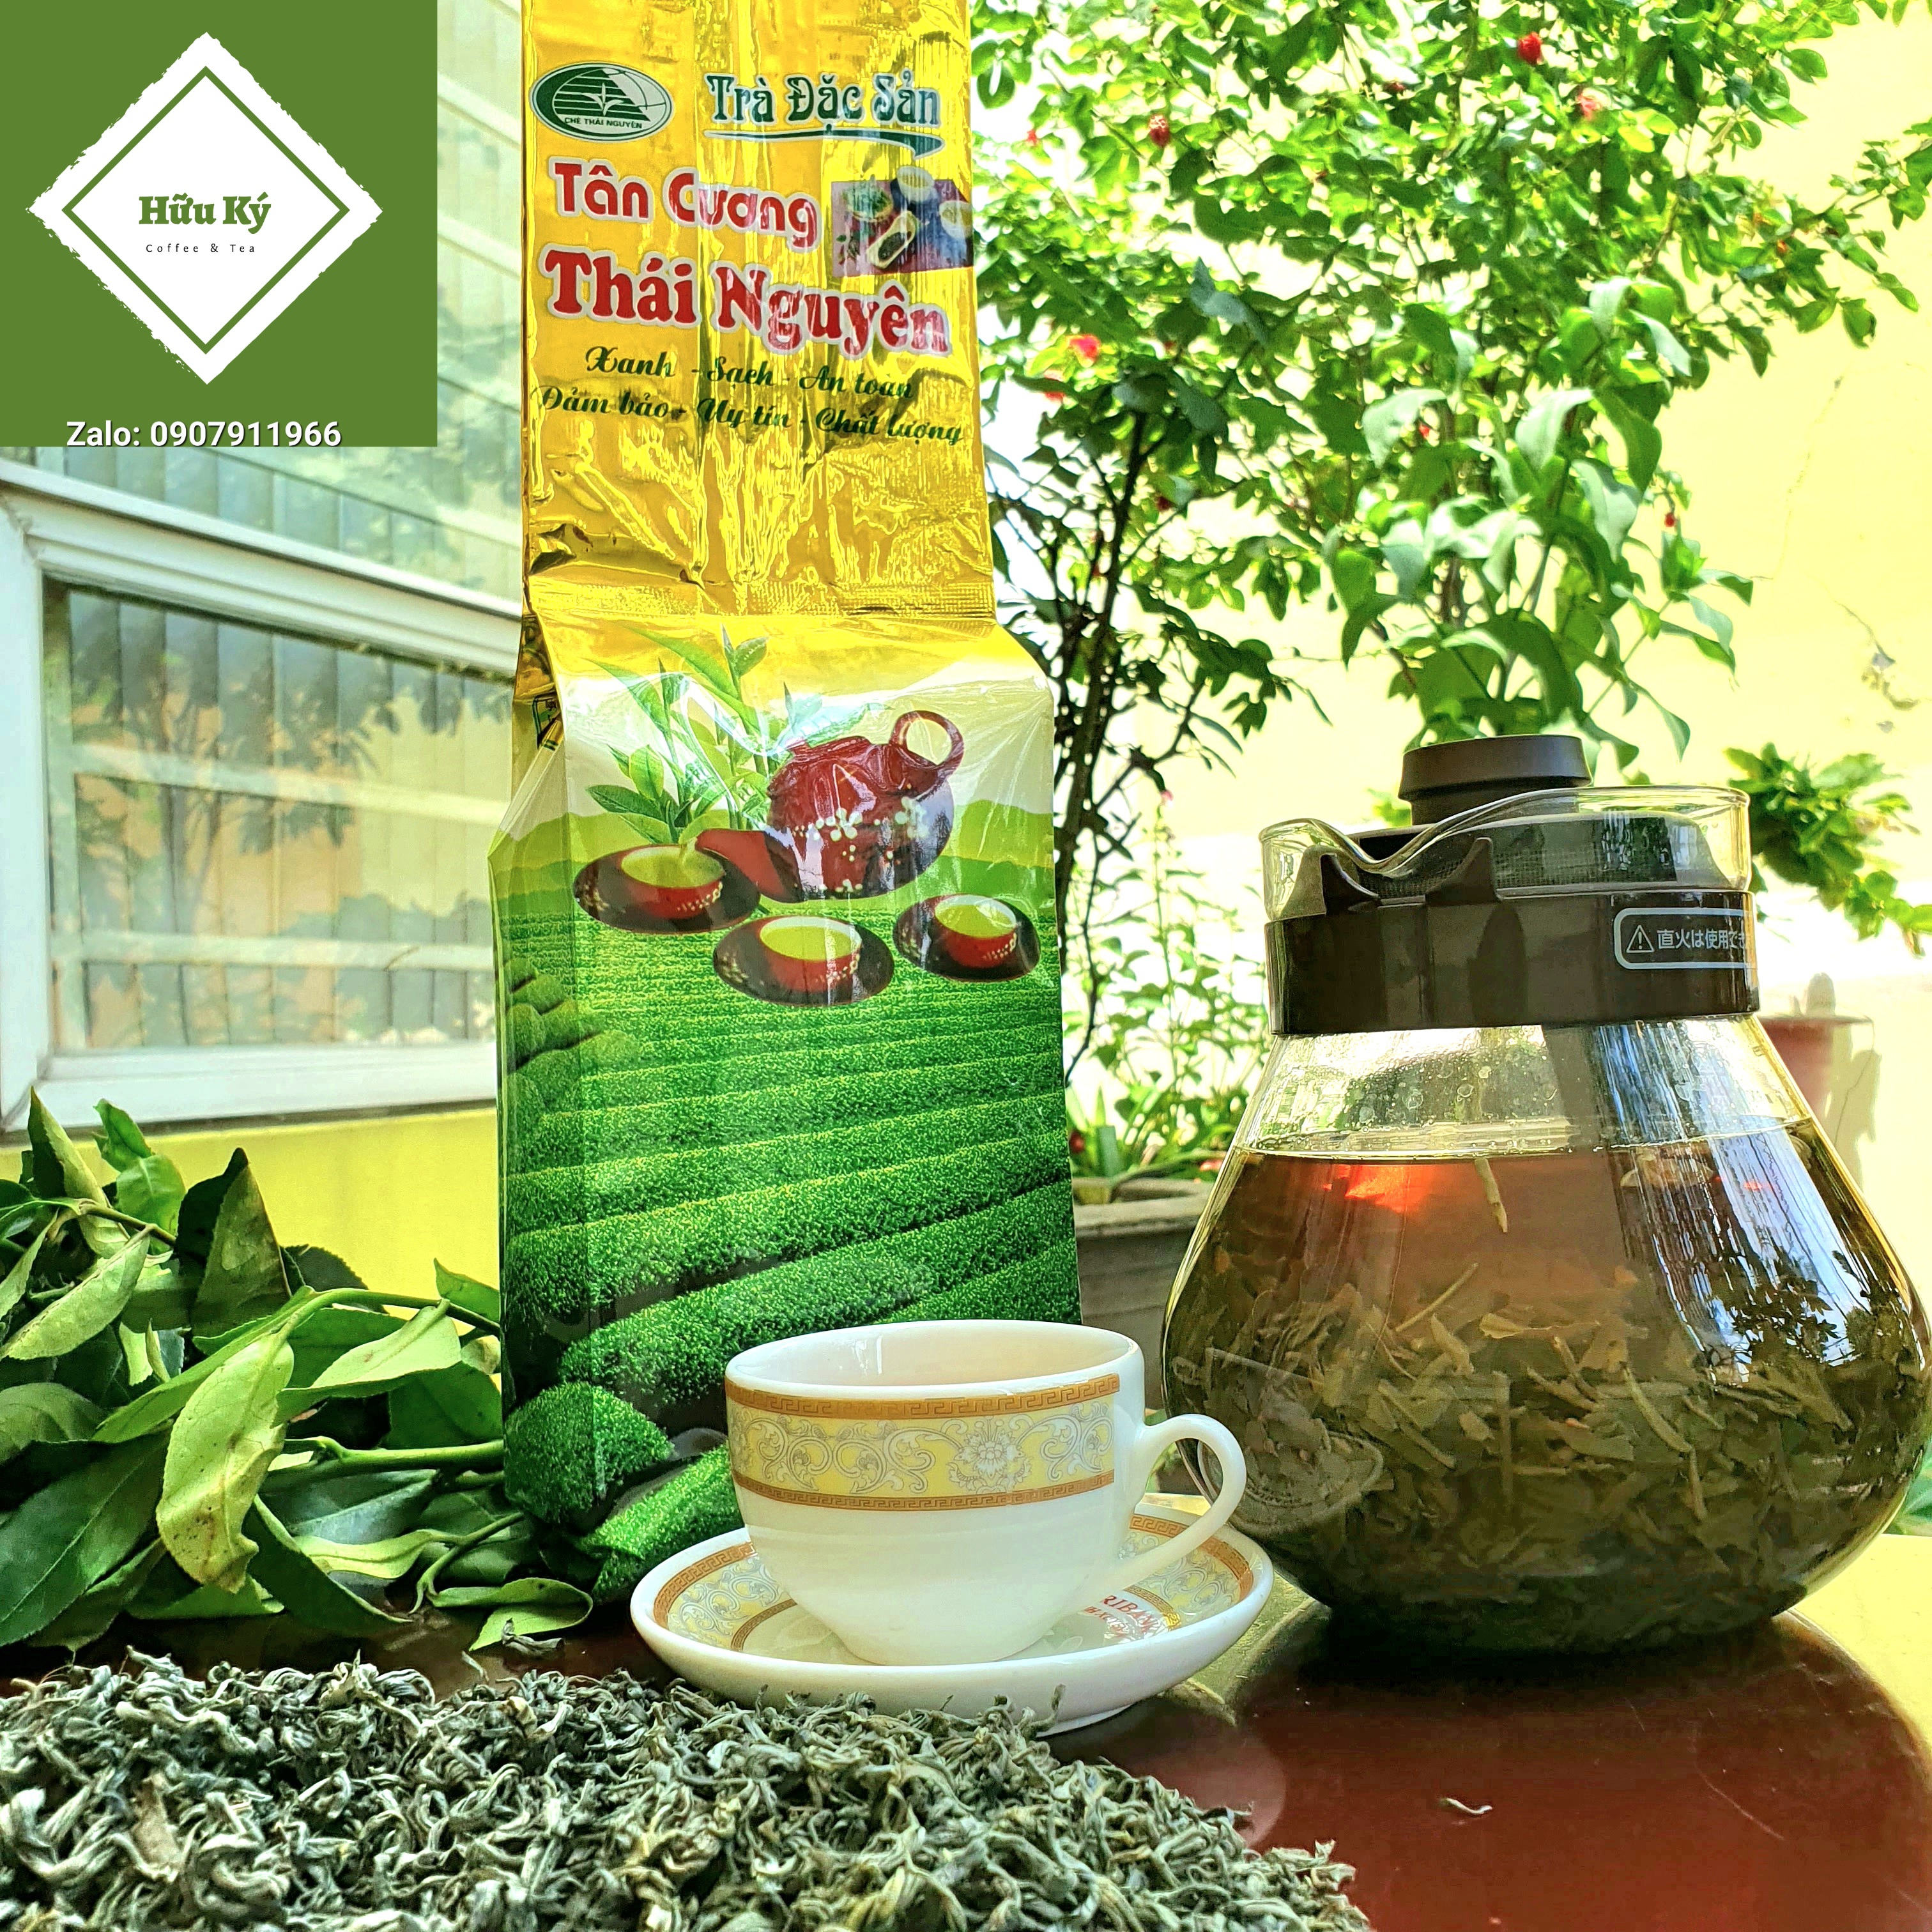 Trà Bắc Thái Nguyên 500g - HUU KY Coffee & Tea